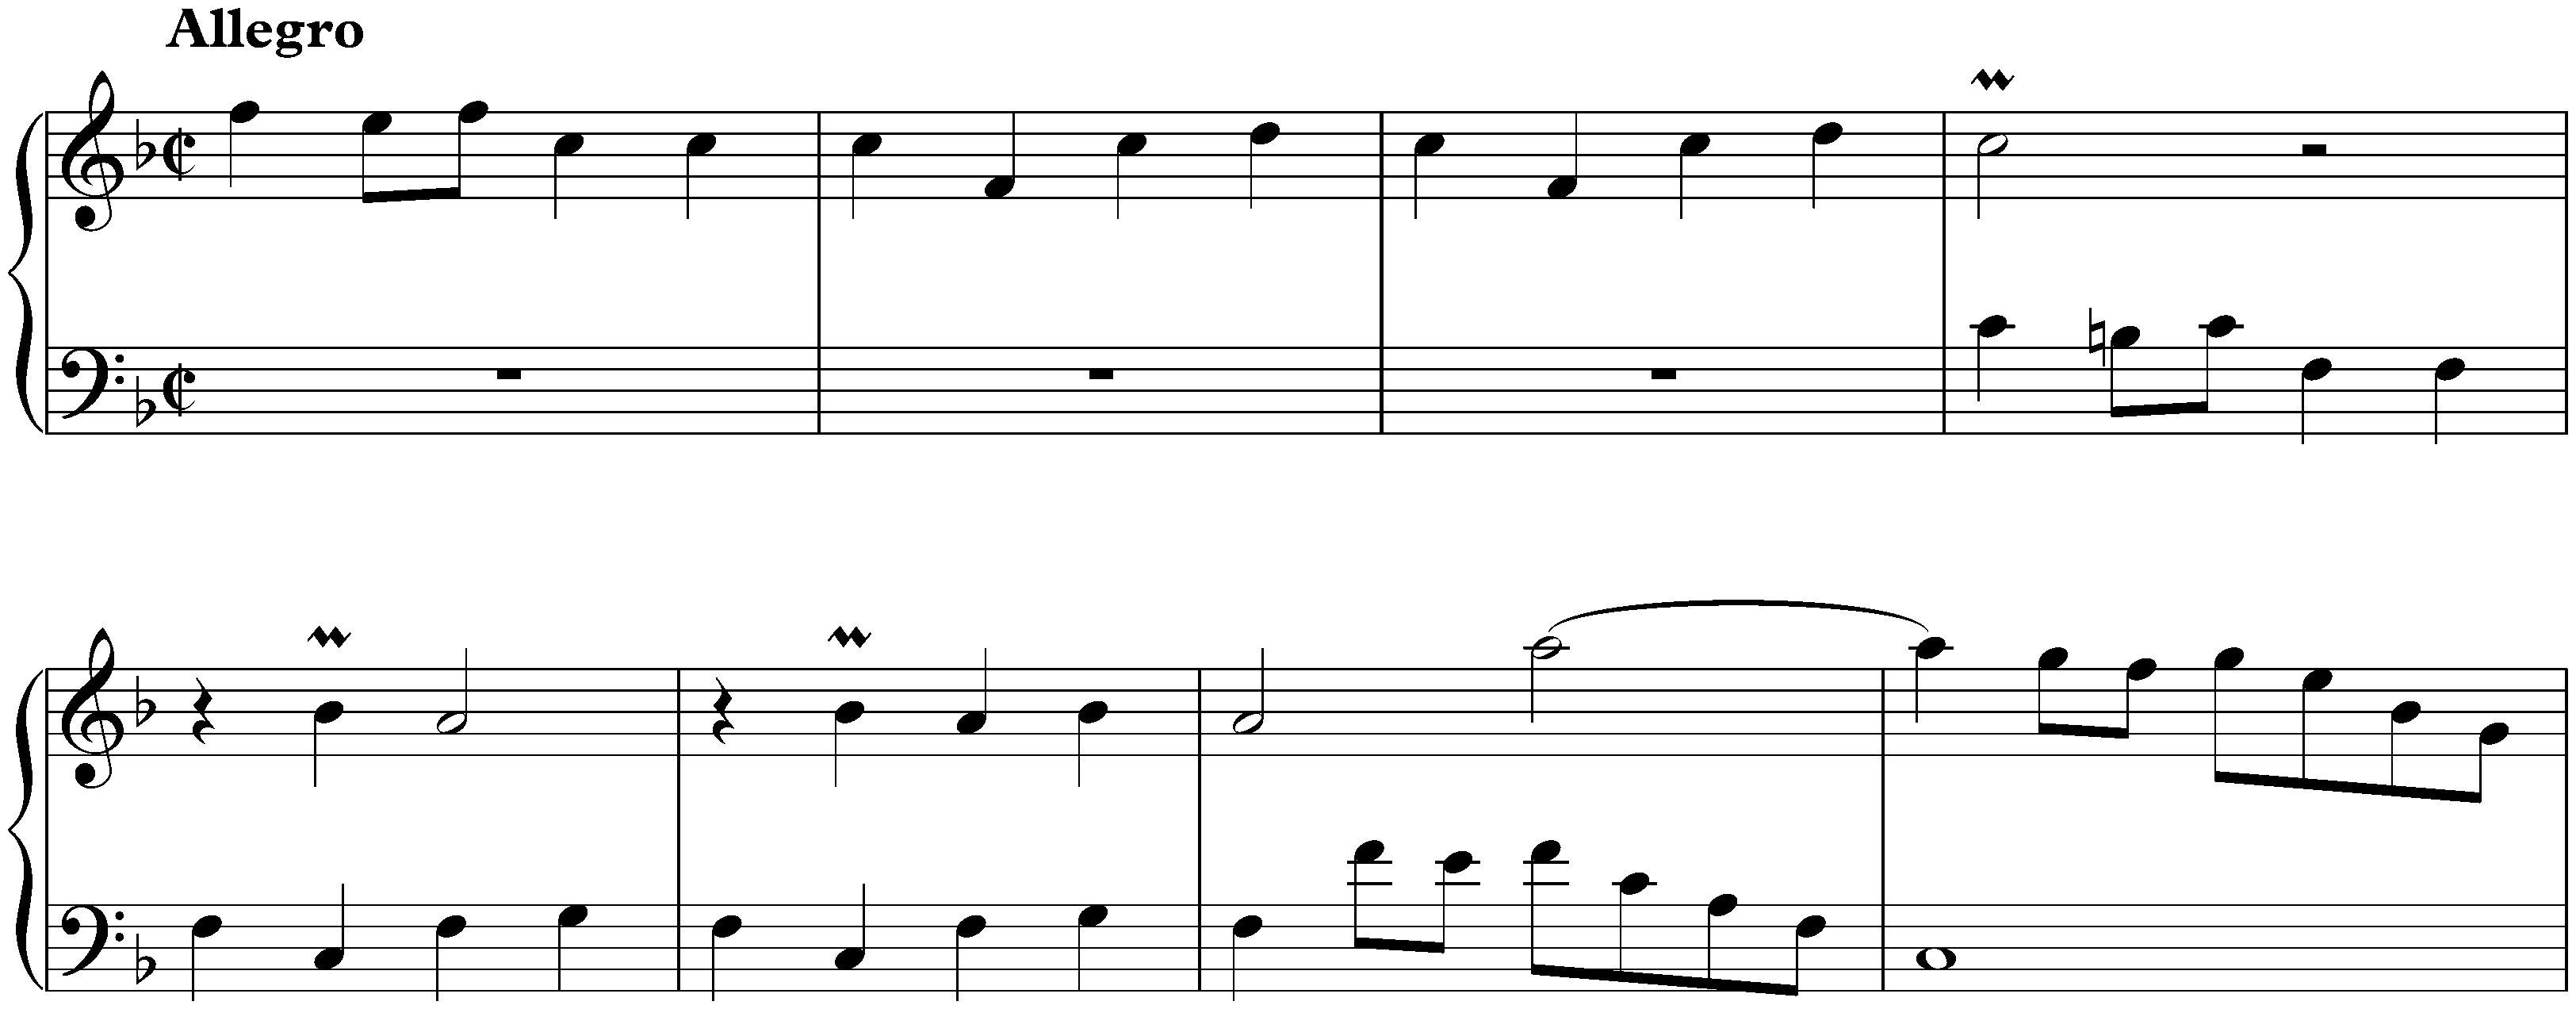 Sonata in F major, K. 316